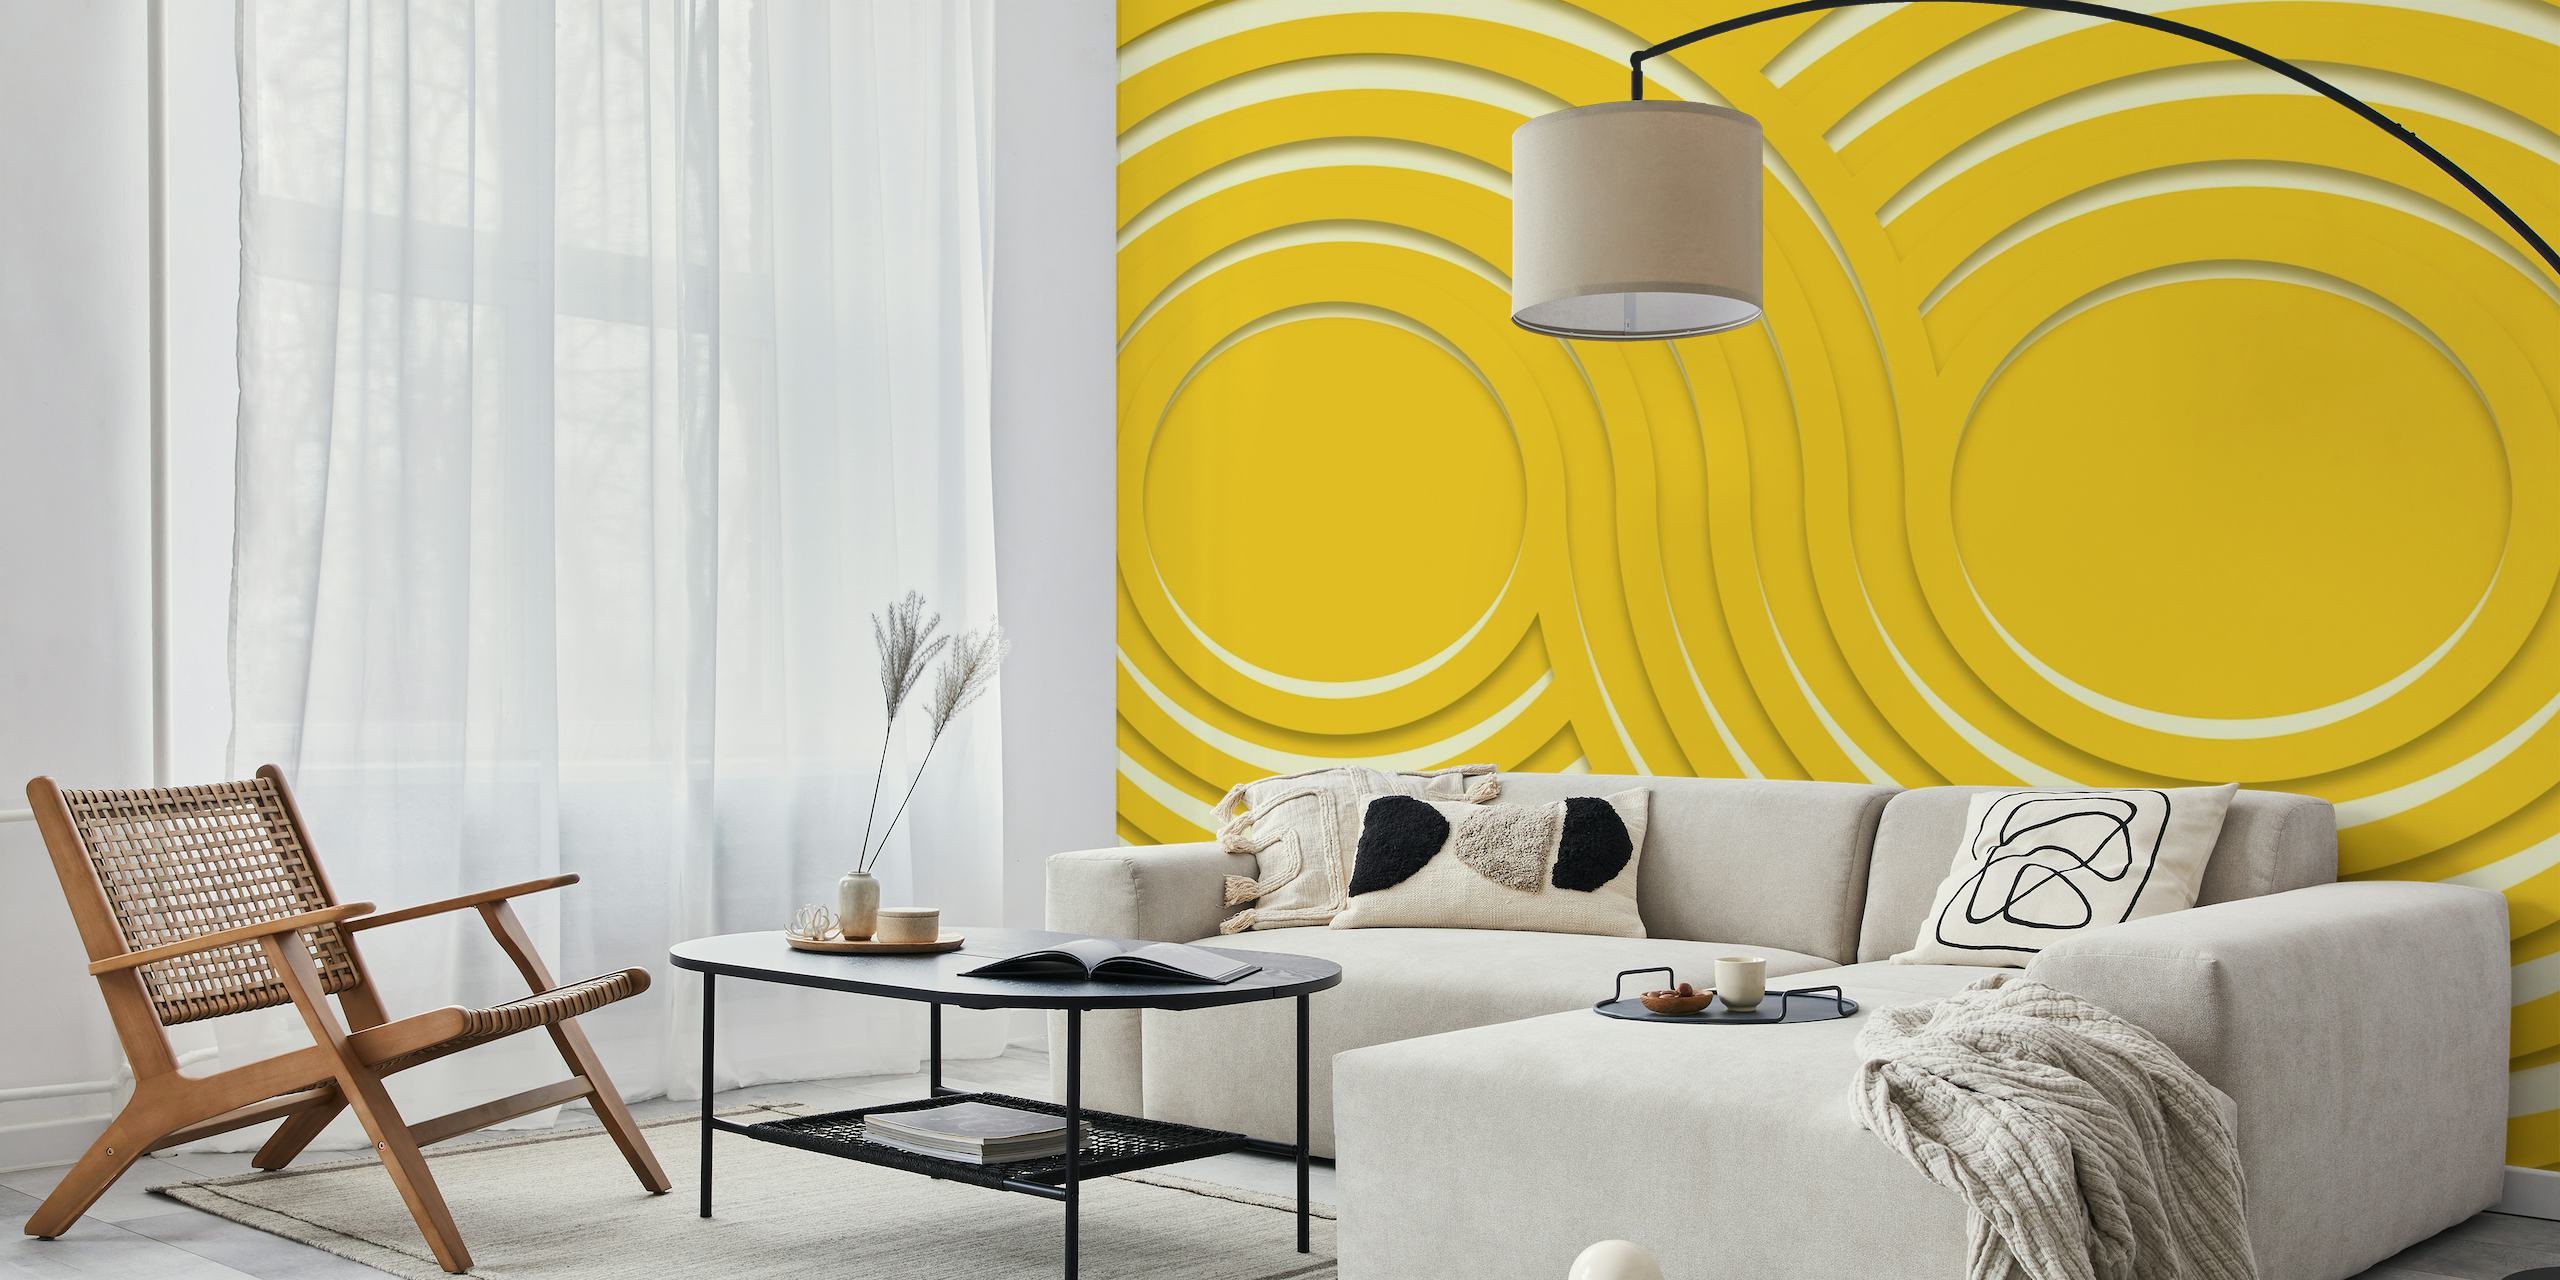 Moderni zidni mural inspiriran Bauhausom iz sredine stoljeća sa uzorkom žutih valovitih valova.